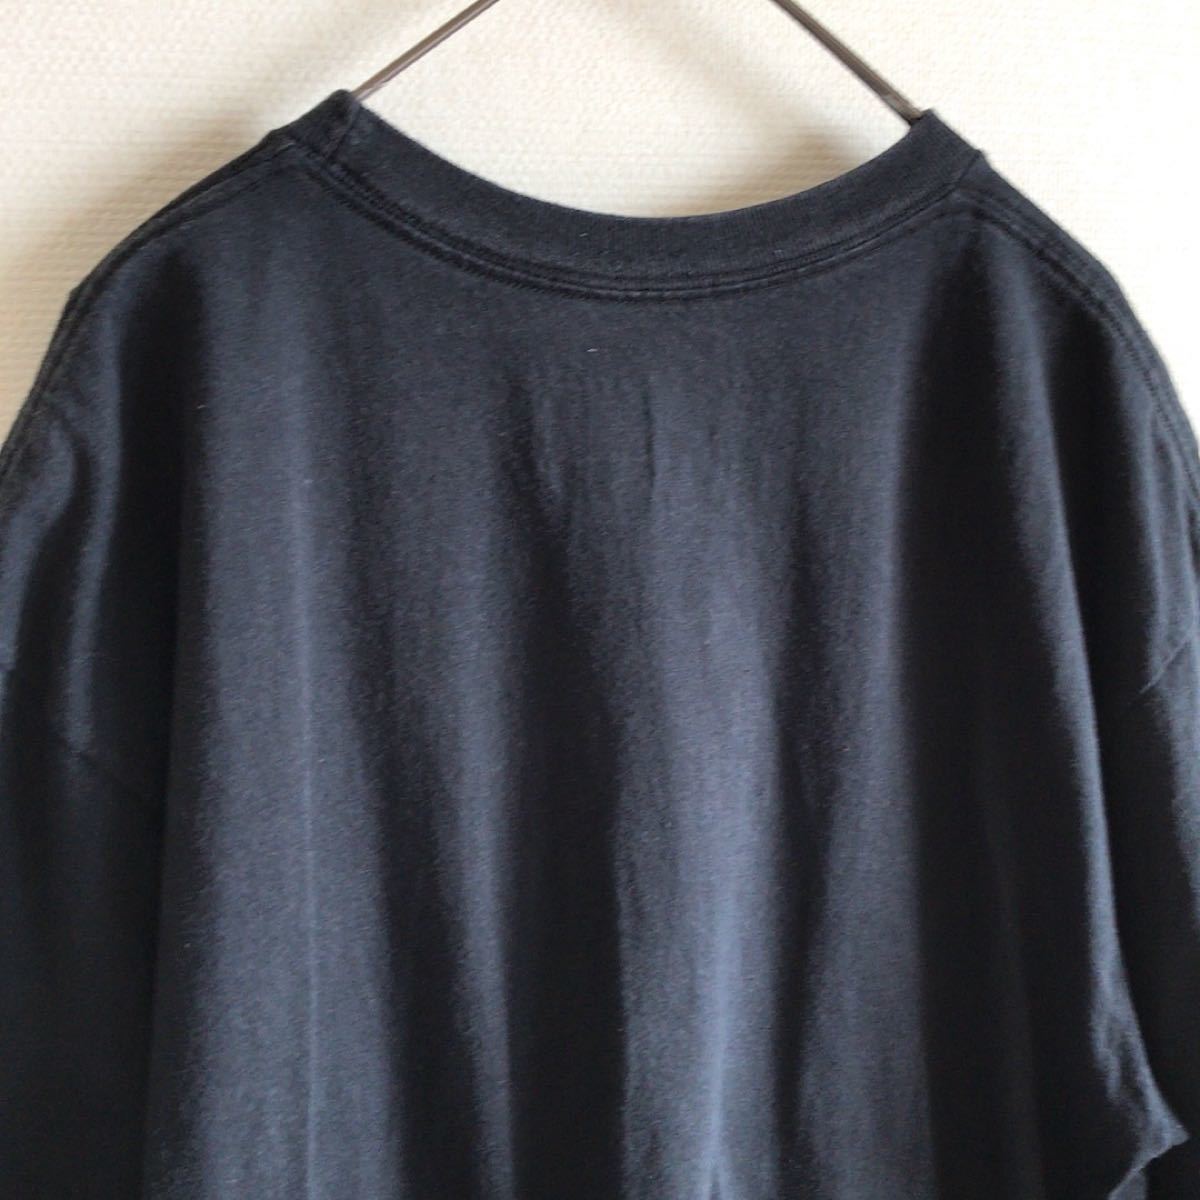 NIKE/ナイキ Tシャツ ボール柄プリント 黒 Lサイズ